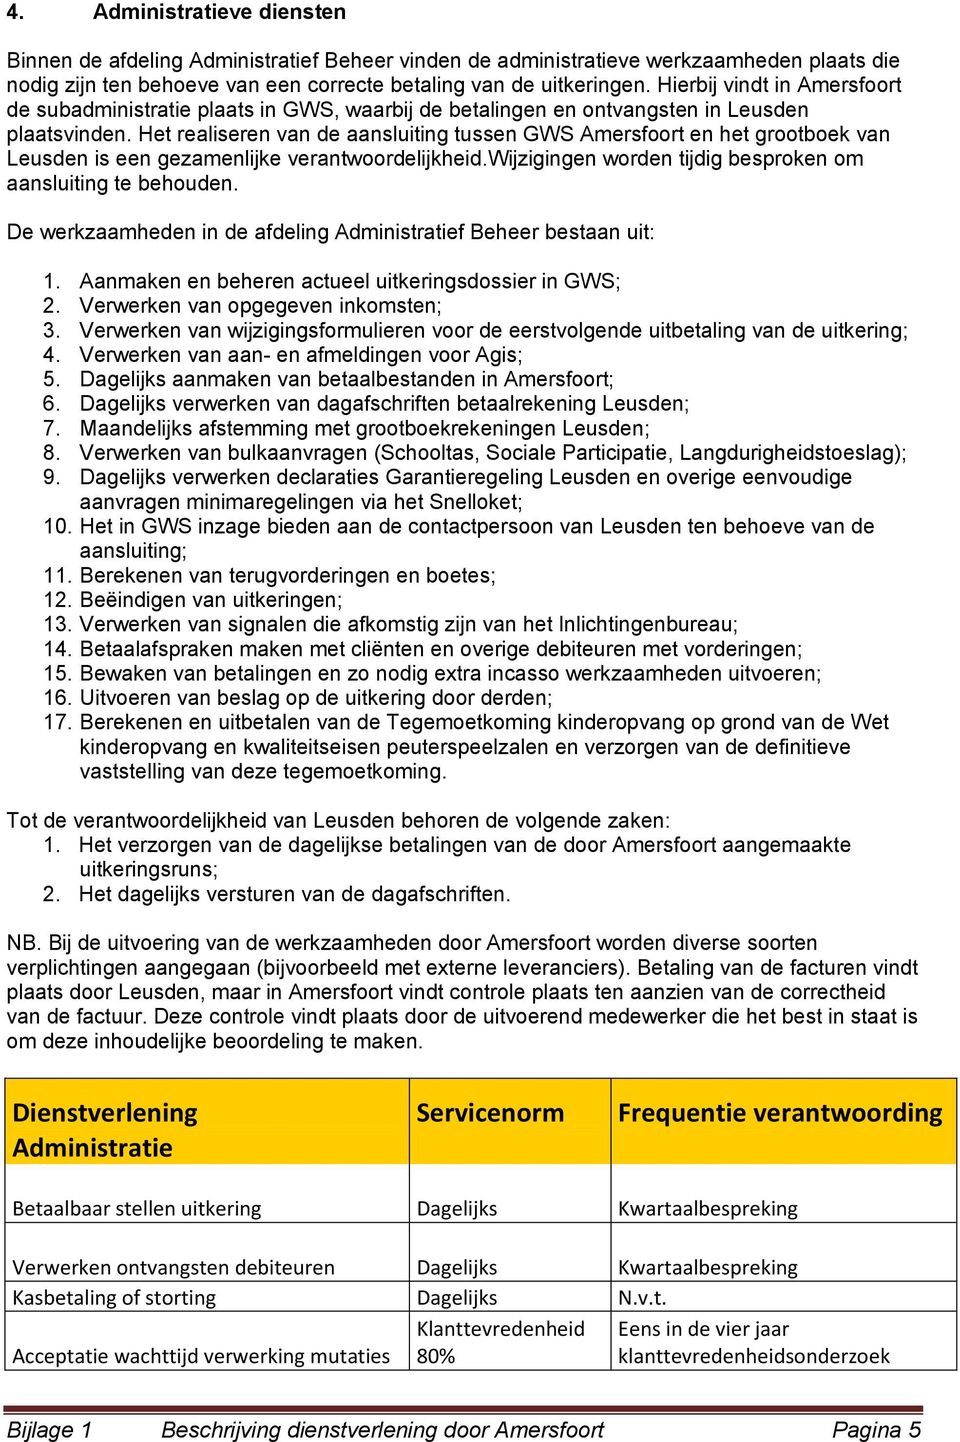 Het realiseren van de aansluiting tussen GWS Amersfoort en het grootboek van Leusden is een gezamenlijke verantwoordelijkheid.wijzigingen worden tijdig besproken om aansluiting te behouden.